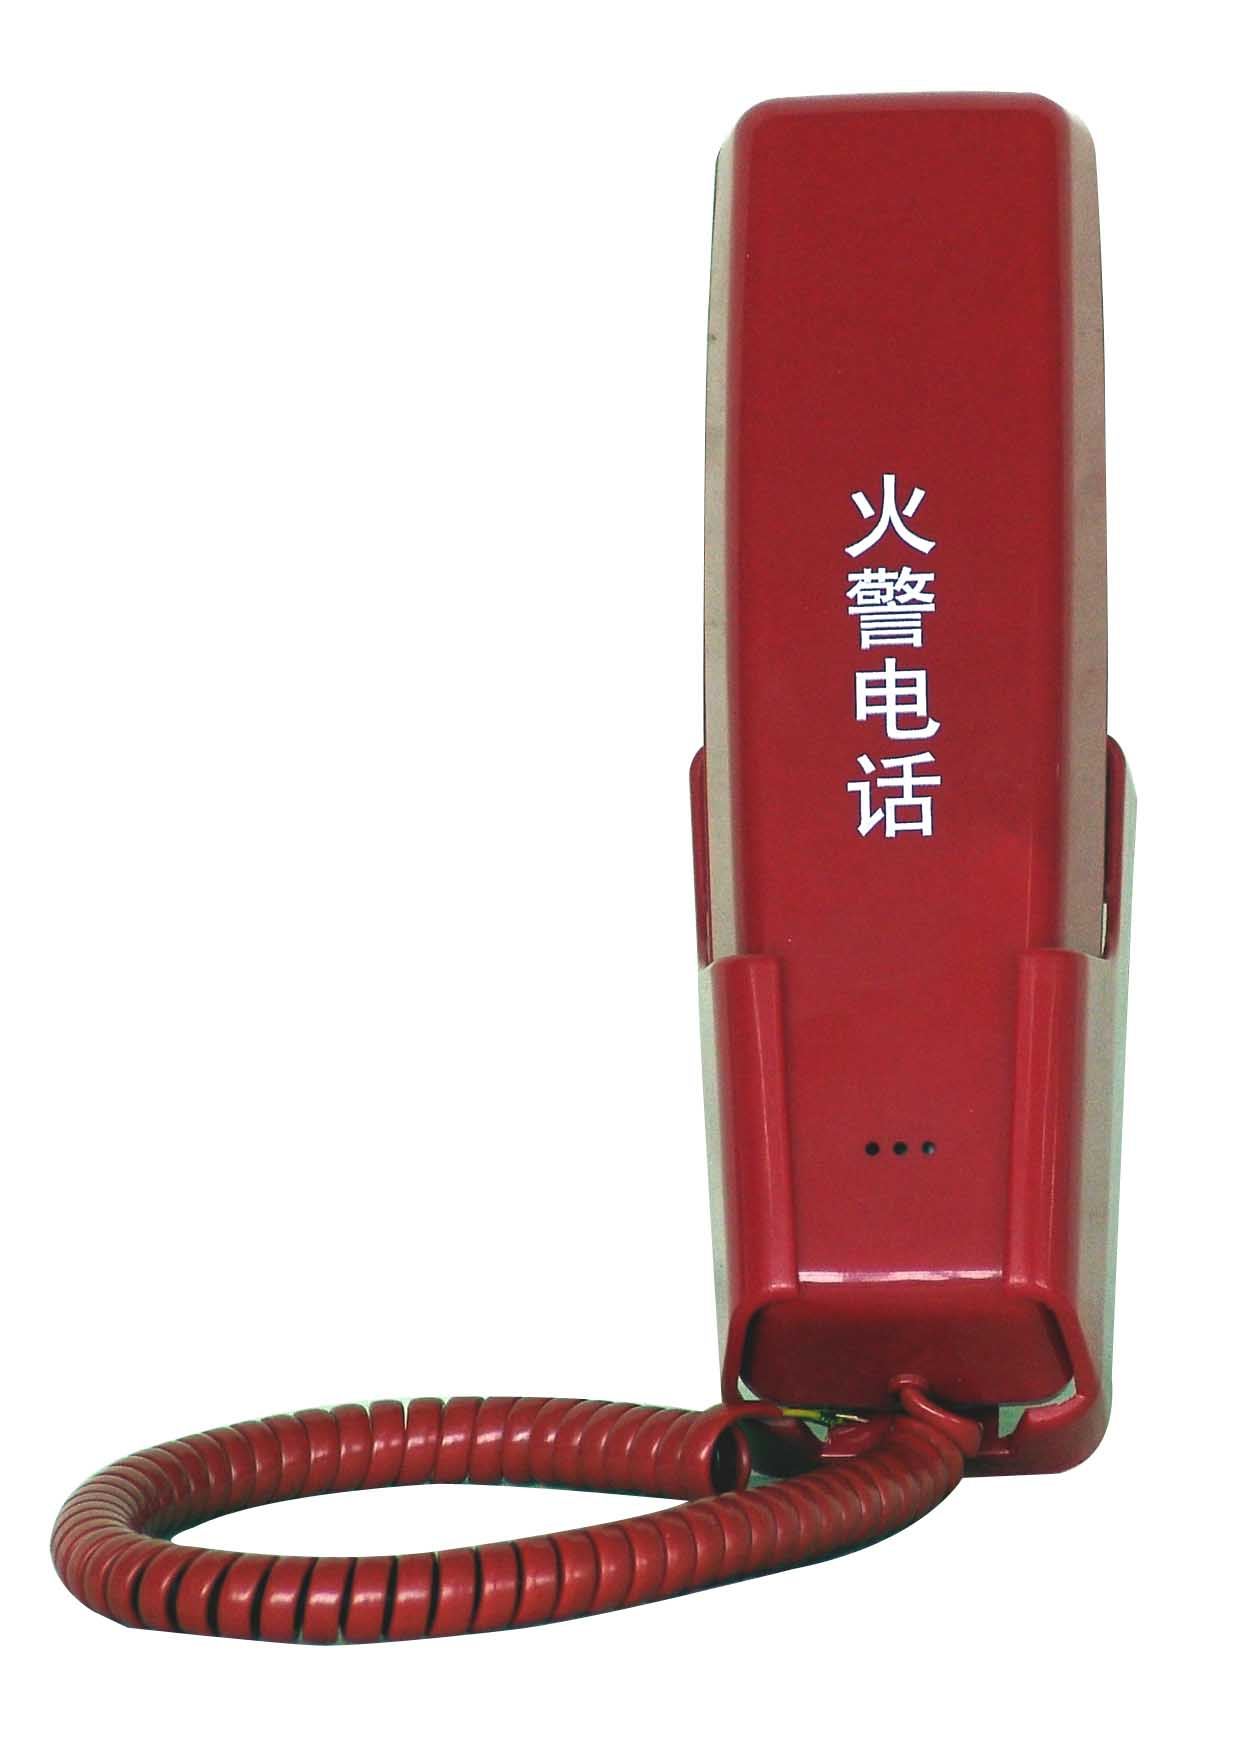 пожарный телефон Leader YJG3040-16 (16